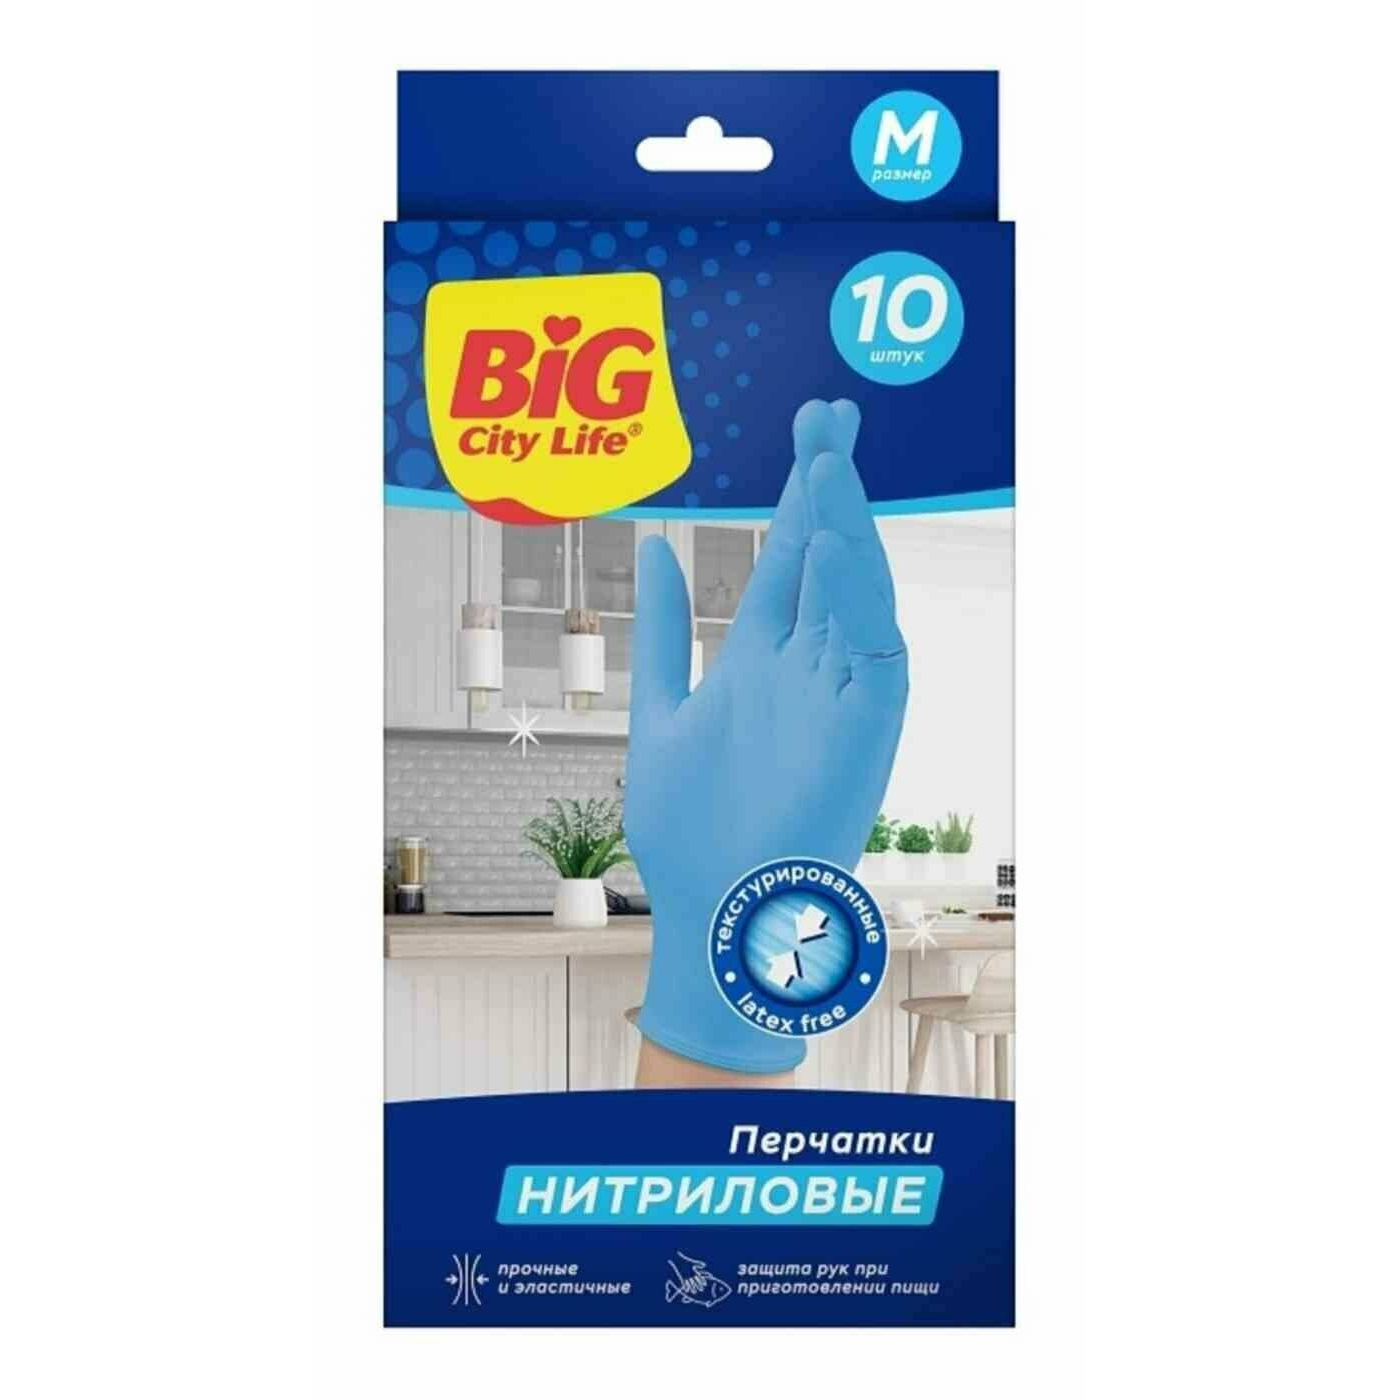 Перчатки Big City Life нитриловые синие M 10 шт